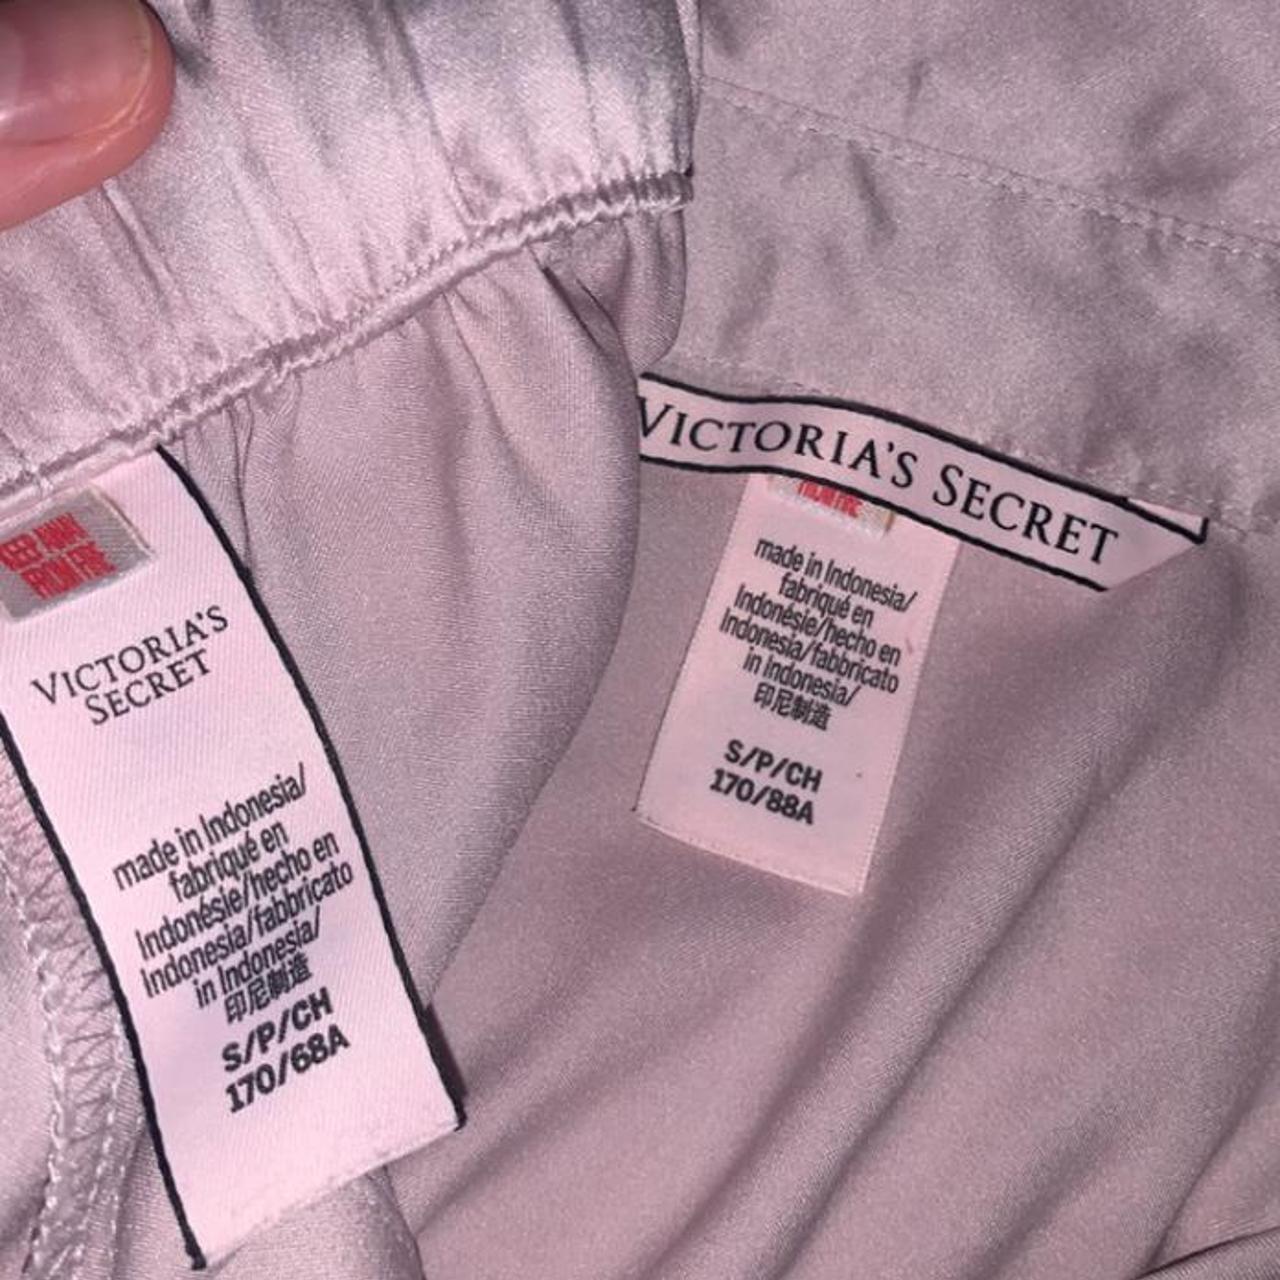 Victoria’s Secret silk pyjamas never been... - Depop